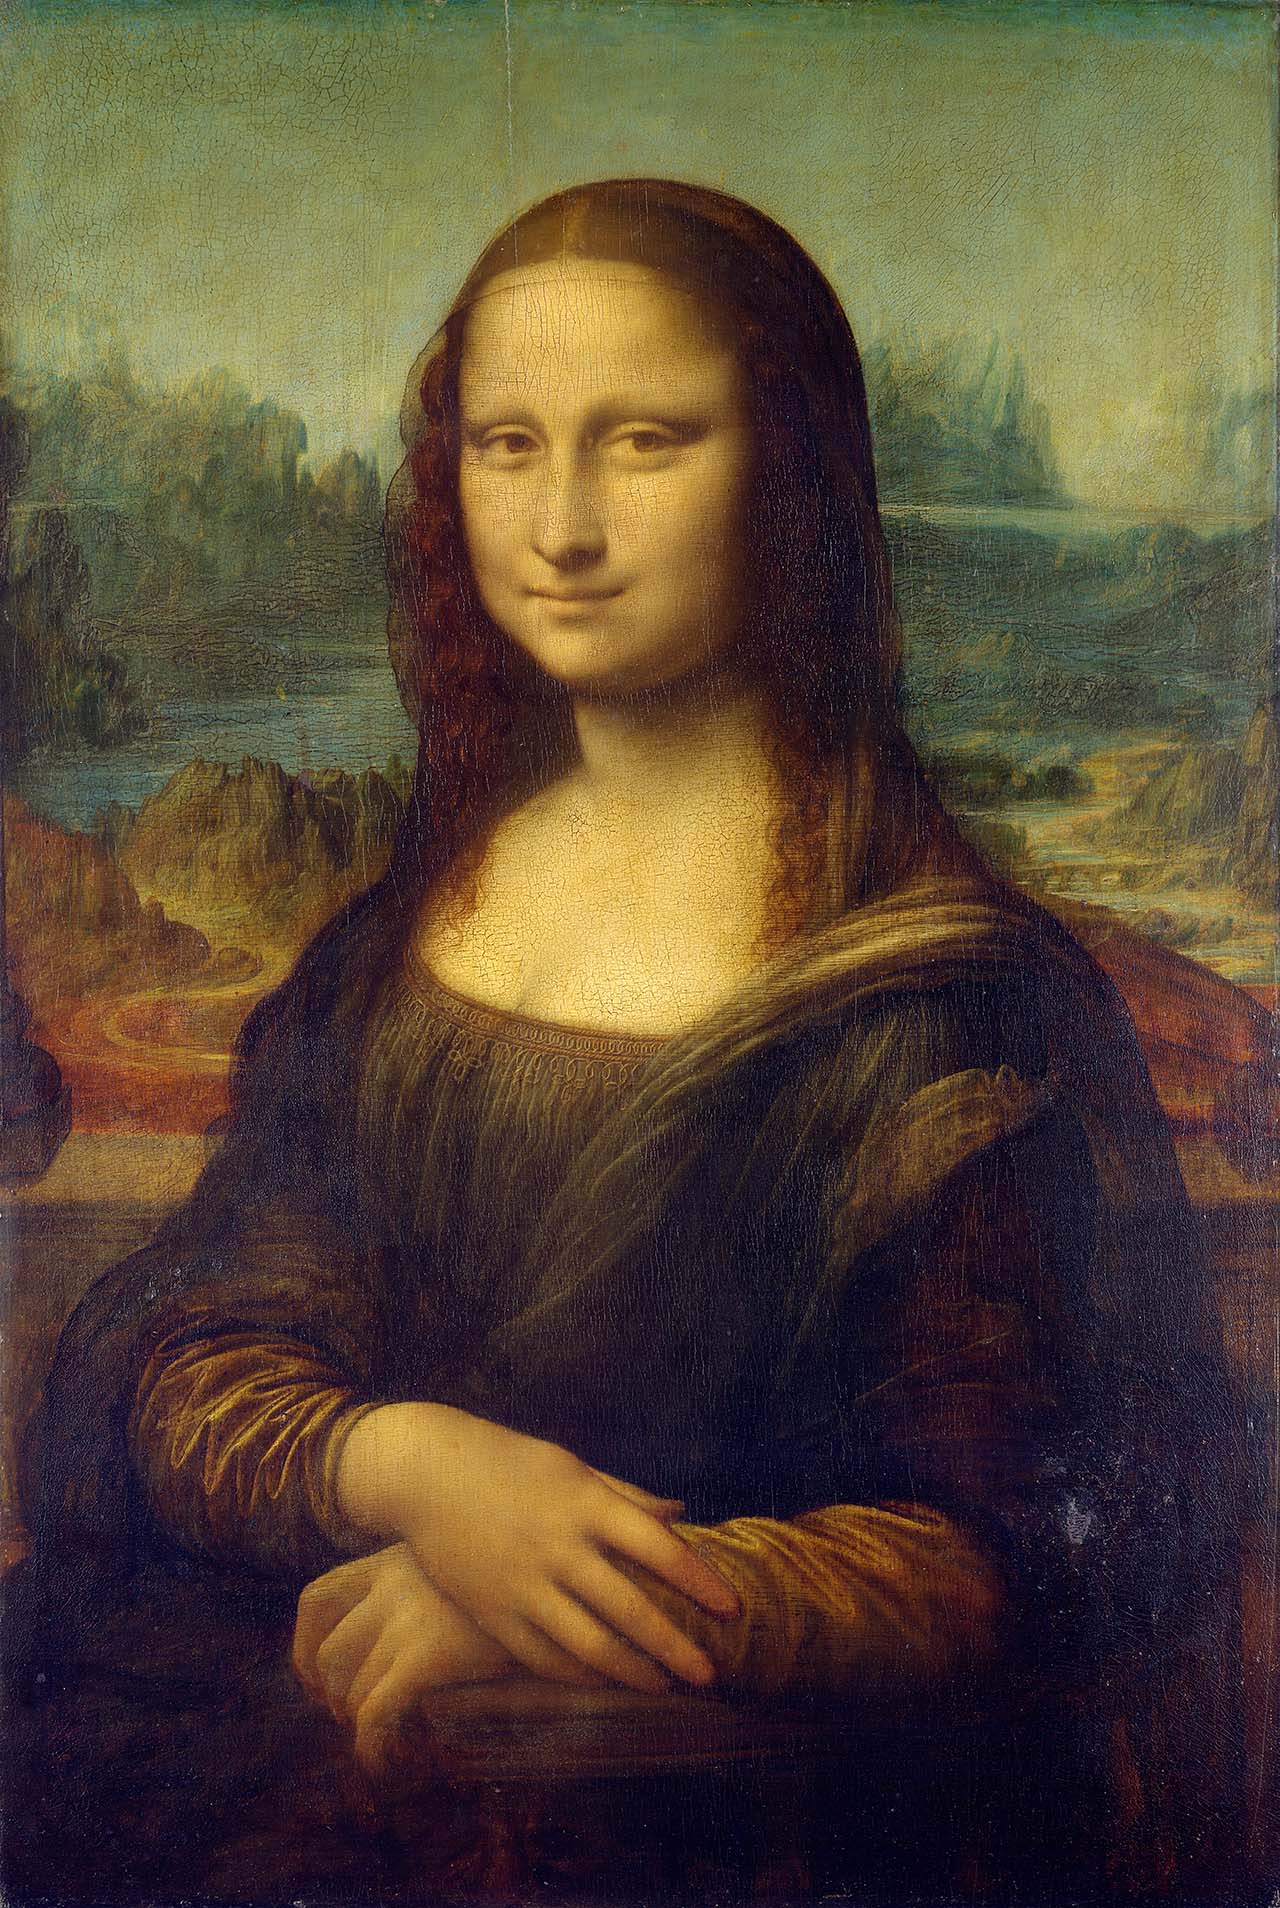 «Джоконда», или «Мона Лиза». Полное название – «Портрет госпожи Лизы дель Джокондо», 1503-1519 годы